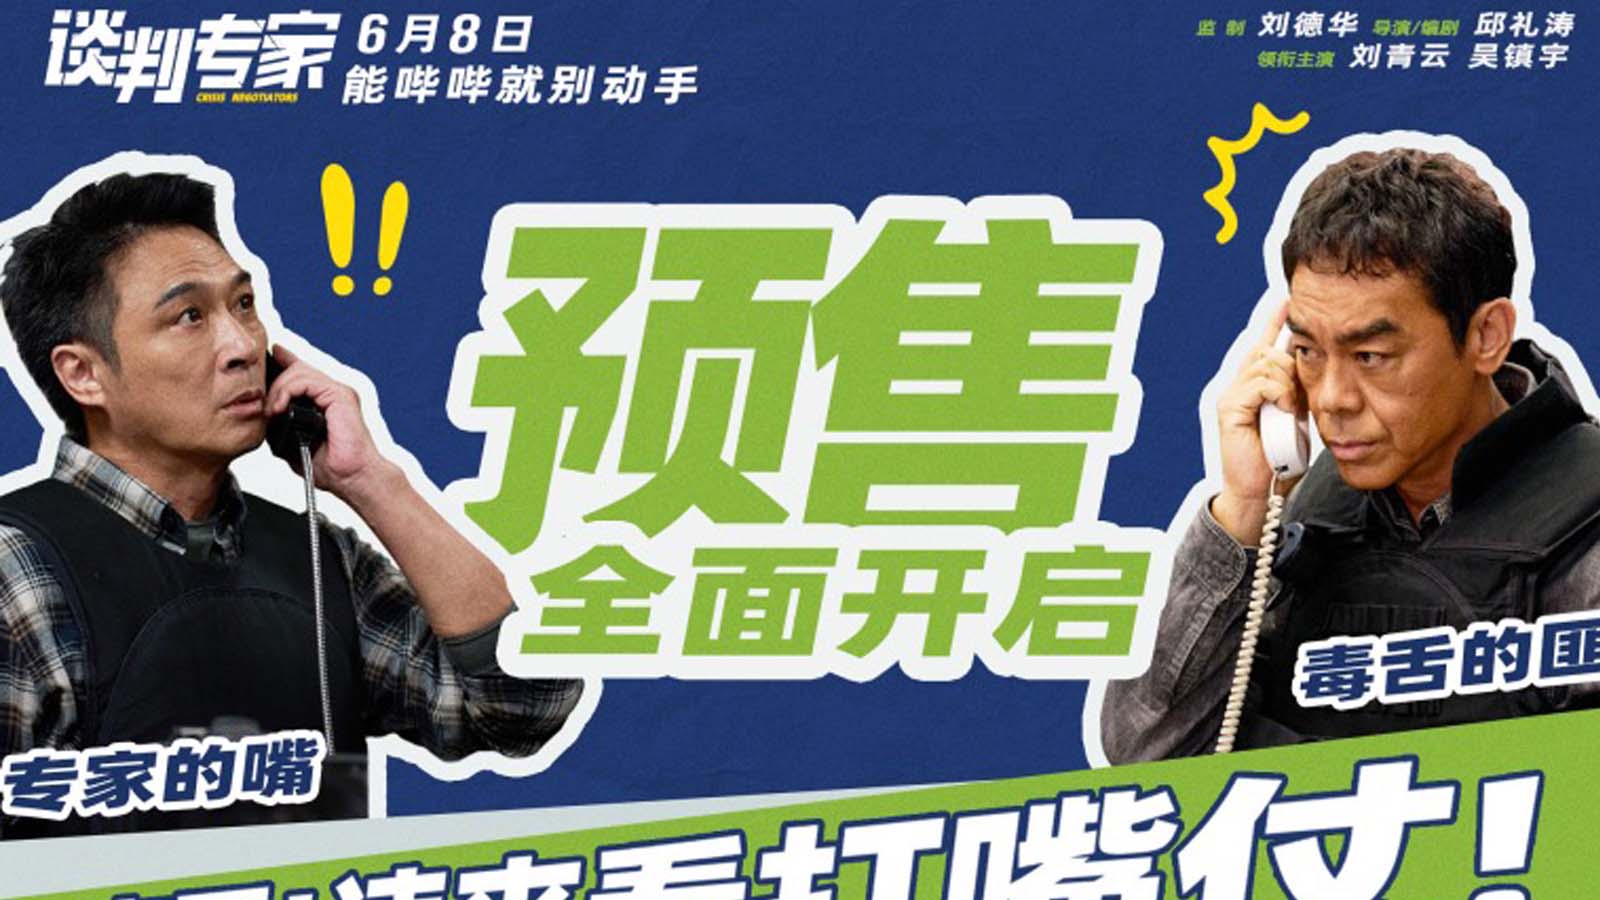 端午档电影《谈判专家》预售开启 刘青云吴镇宇教做“谈判赢家”